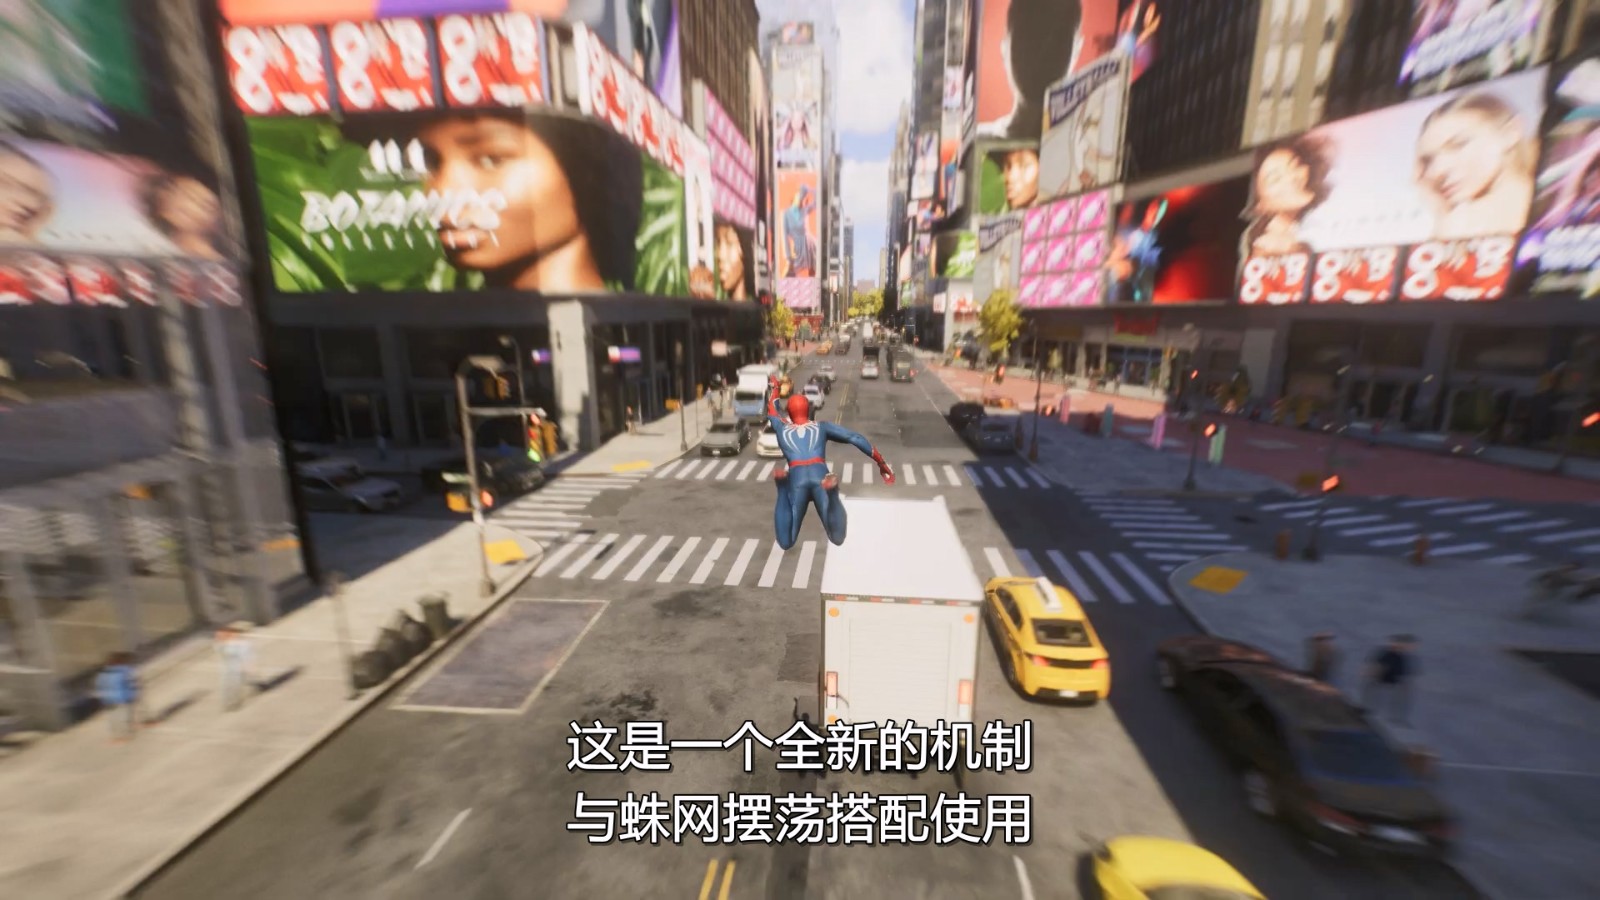 漫威蜘蛛侠2新预告片 经过拓展的漫威宇宙纽约市_3